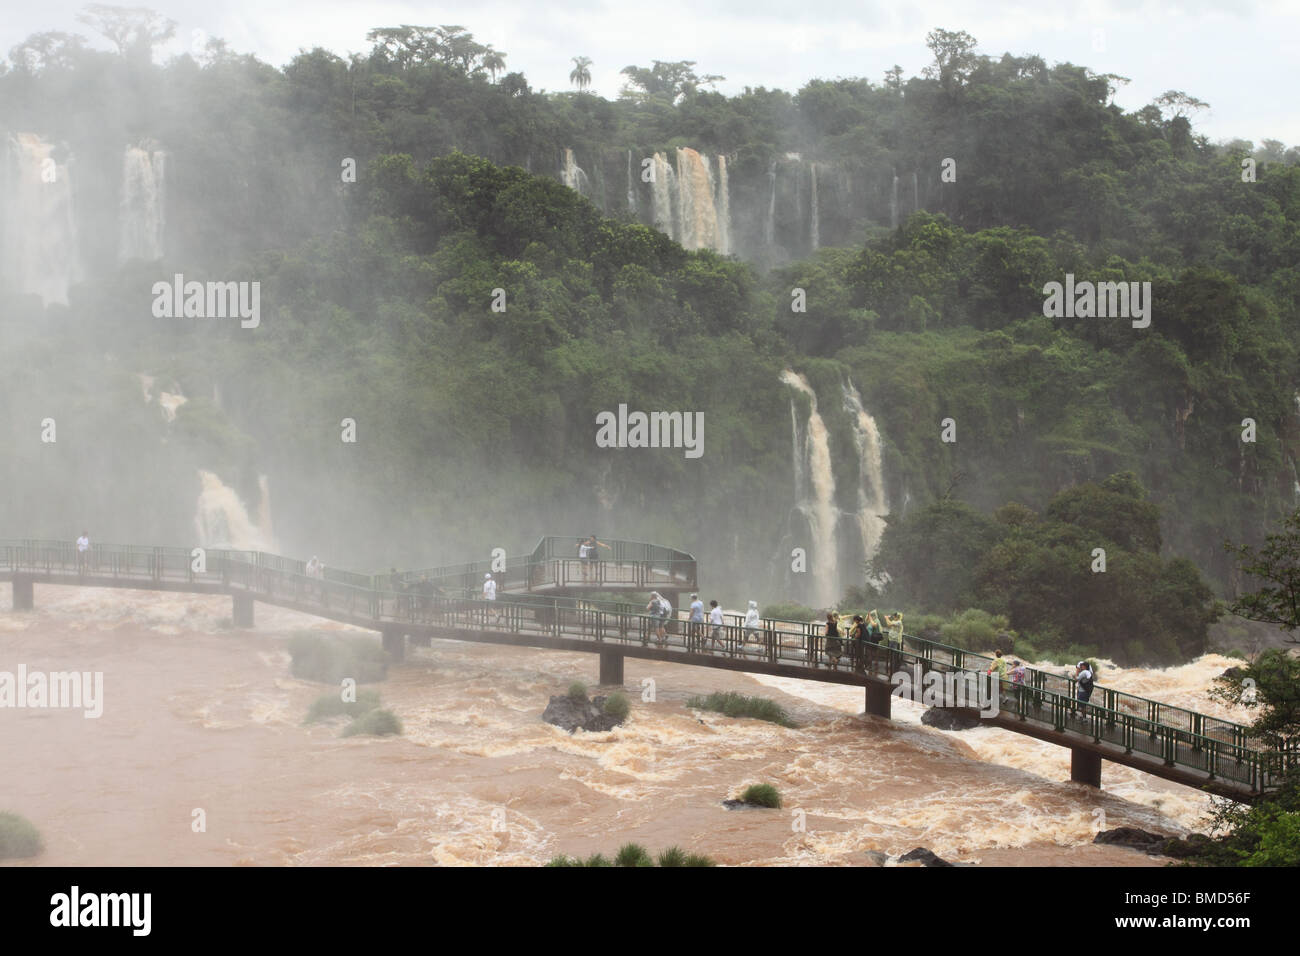 Les touristes sur la promenade avec vue sur chutes d'Iguaçu du côté brésilien. Banque D'Images